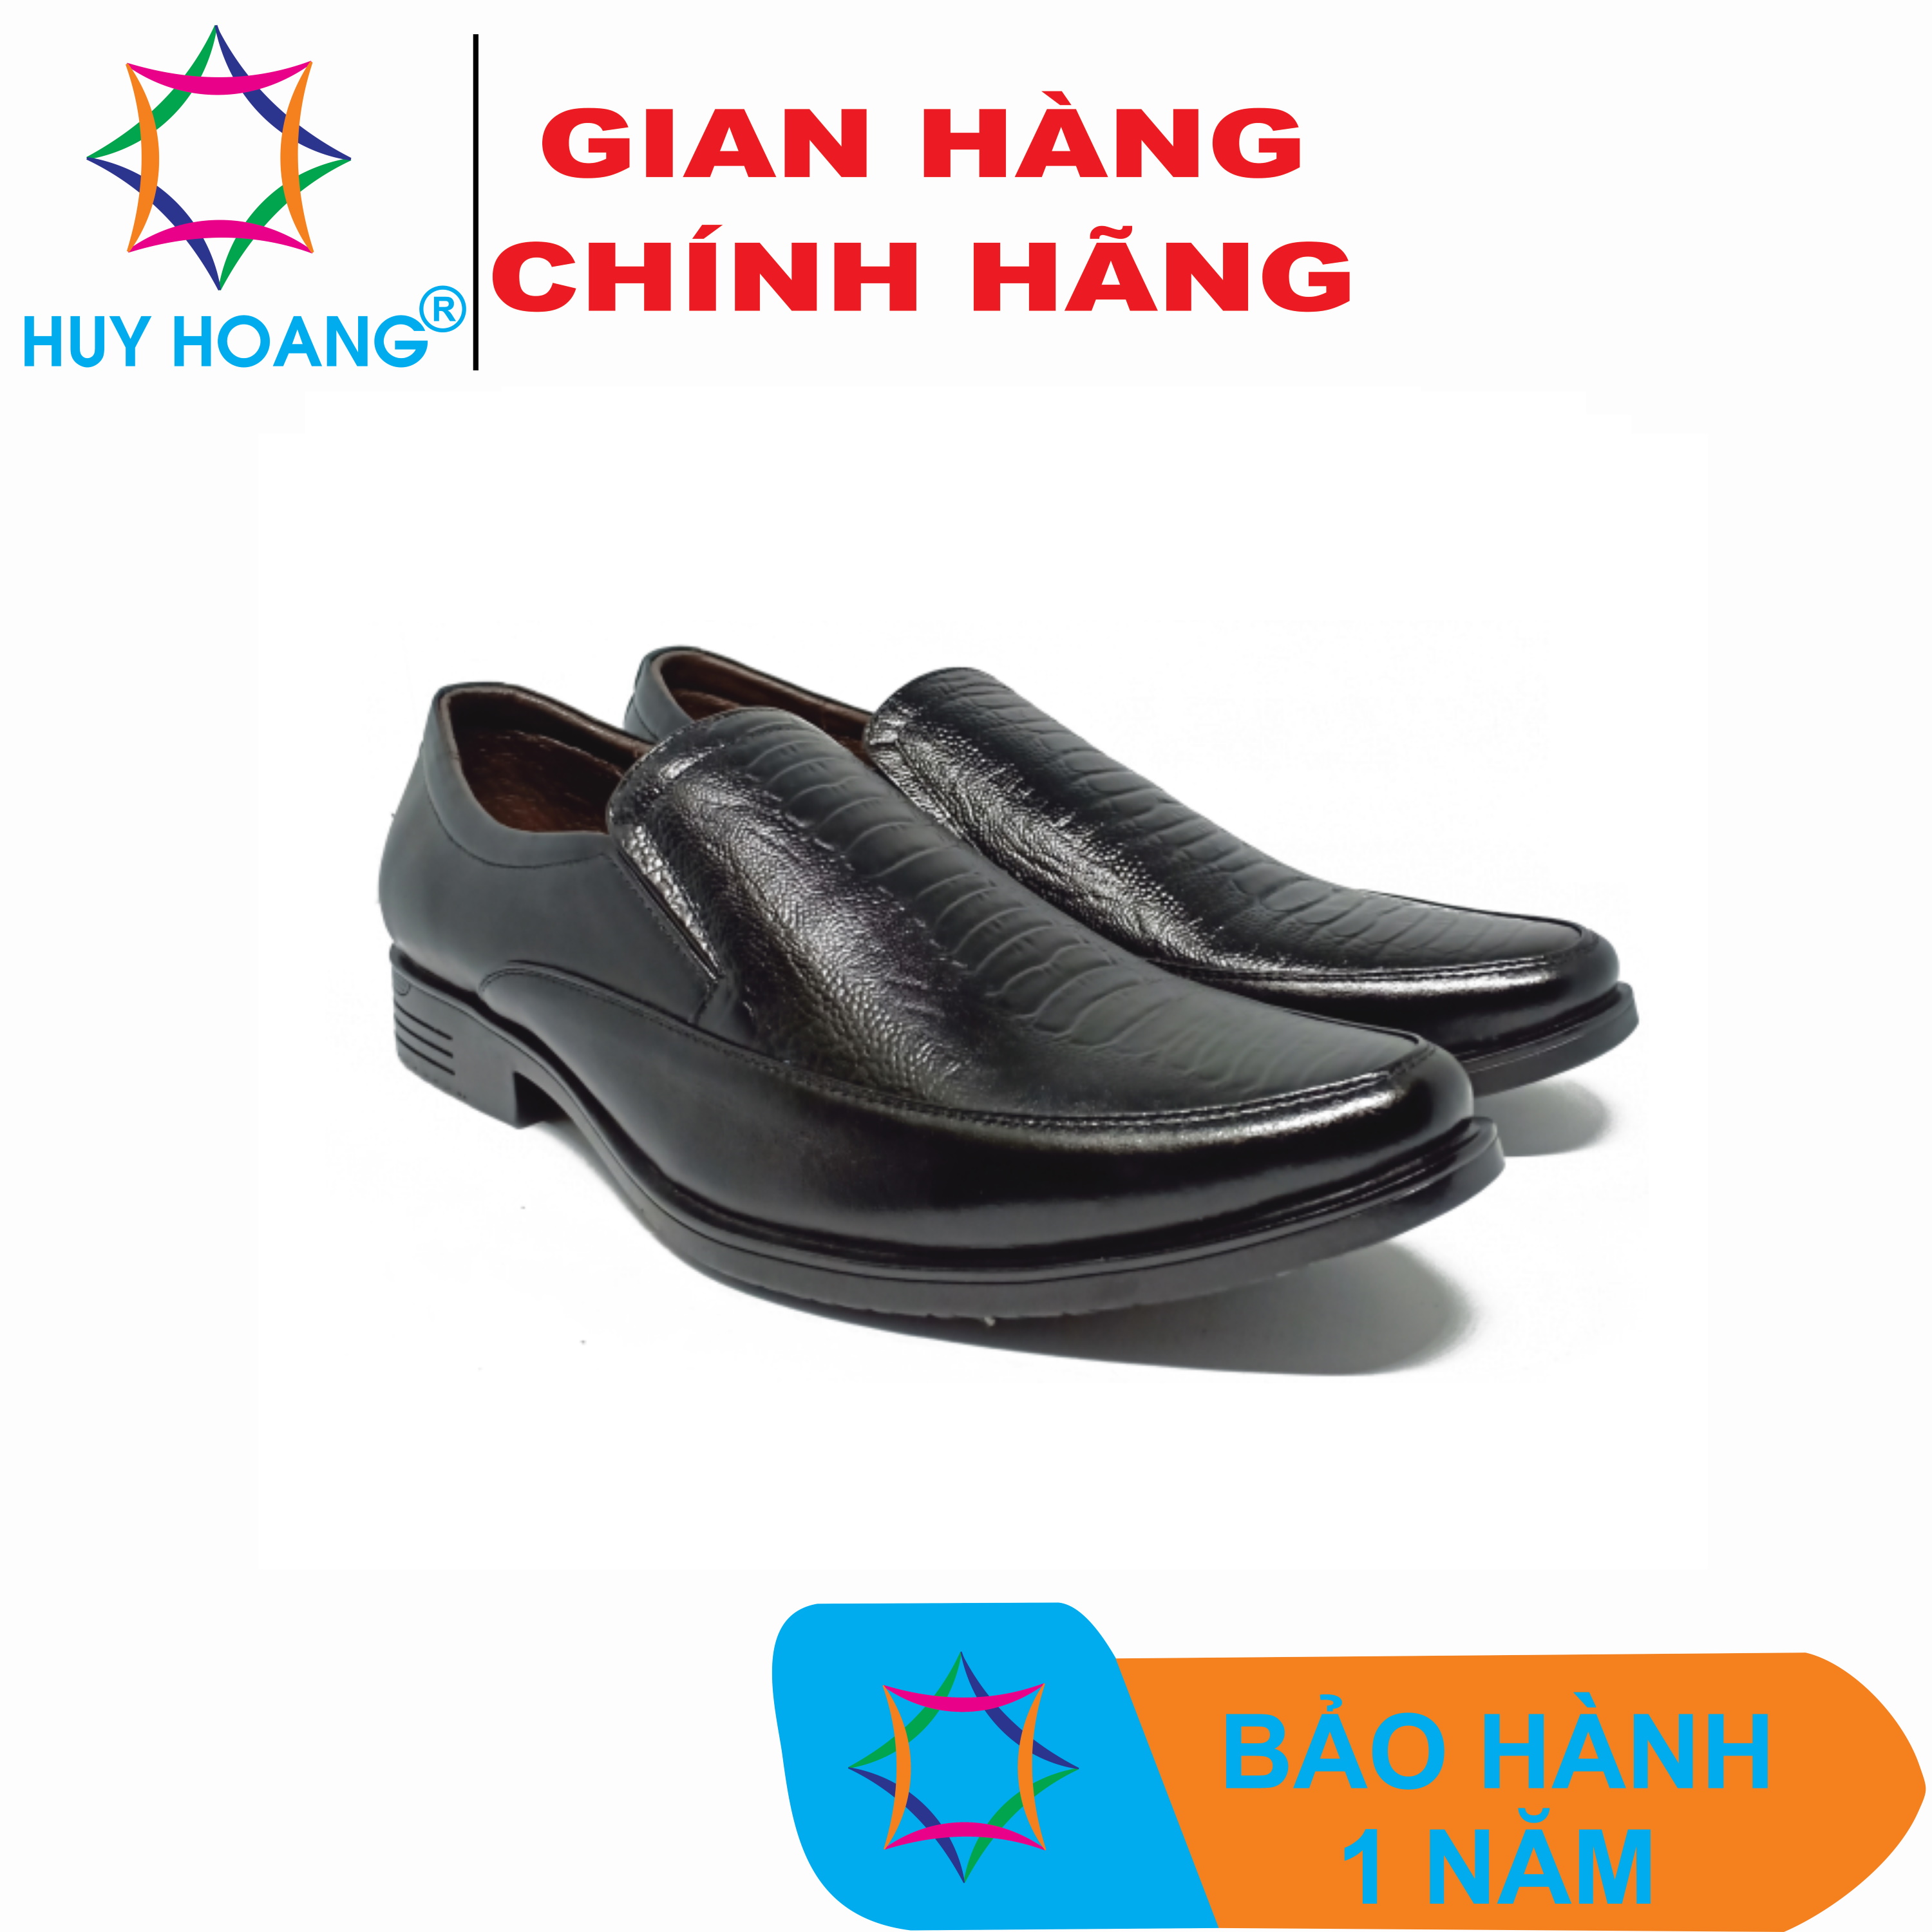 Lưu trữ Giày tây da nam nhập khẩu - Trang 6 trên 34 - Công ty giày da xuất  khẩu Huy Hoàng